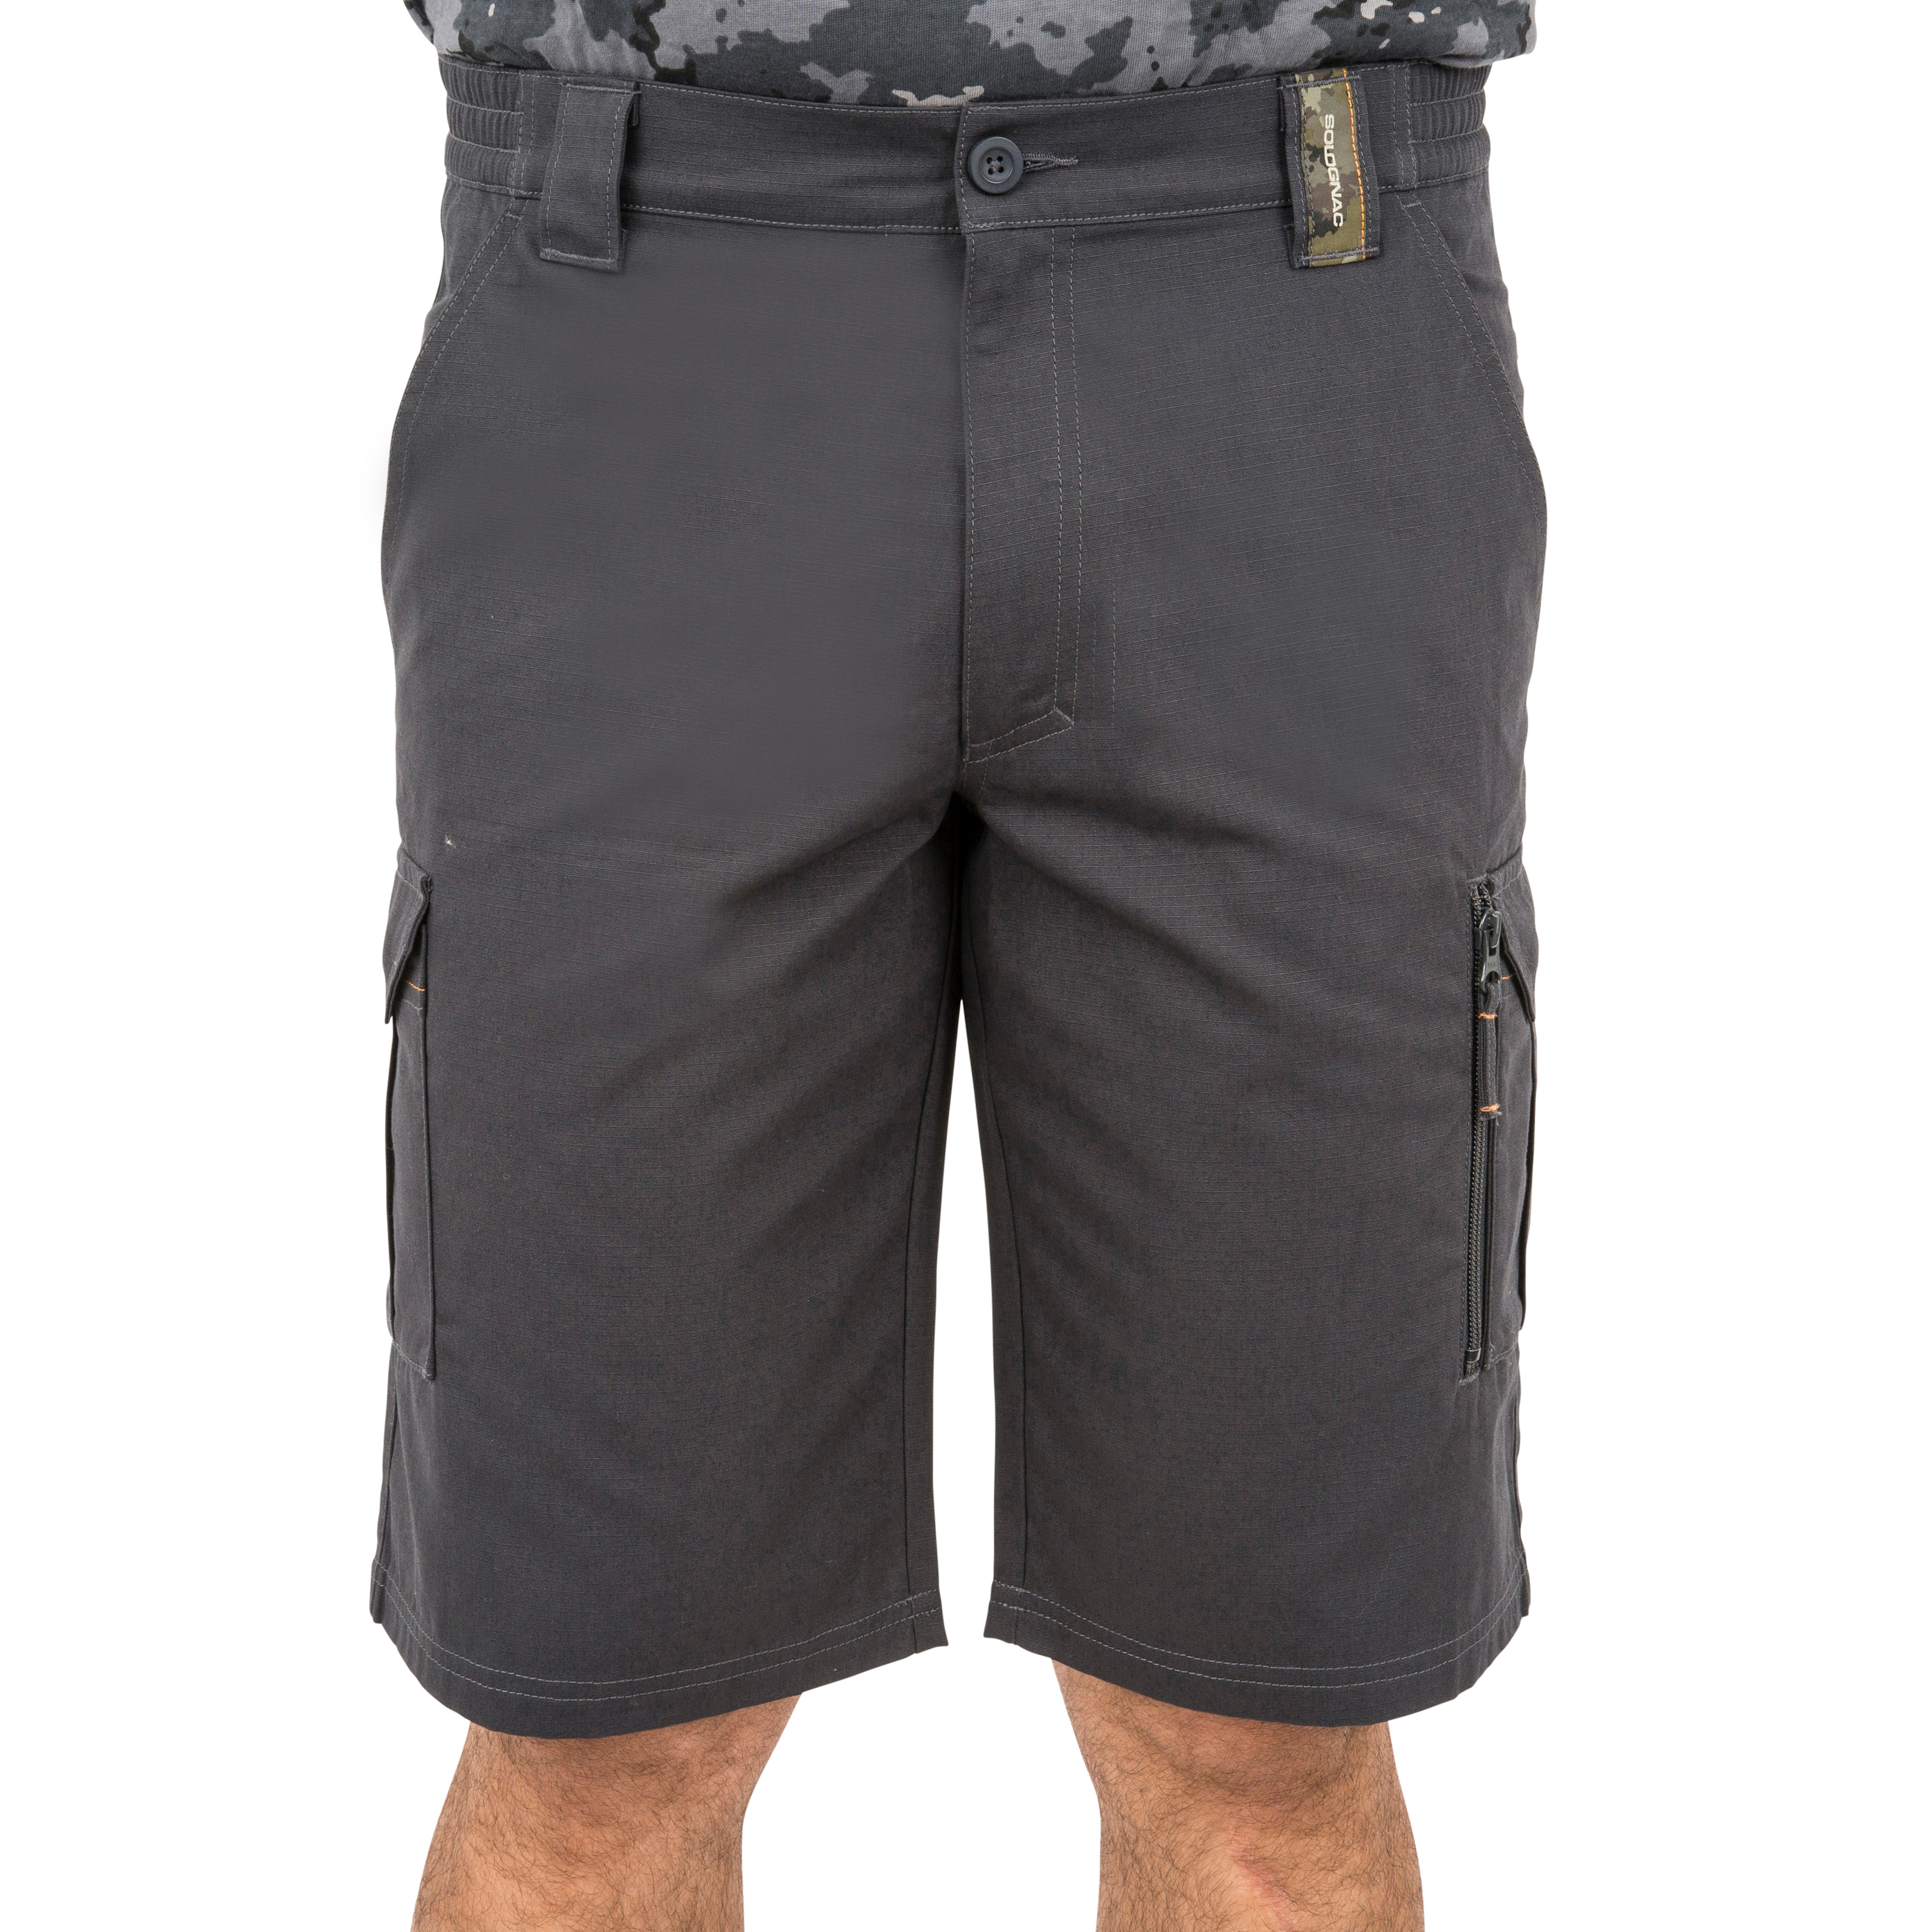 Buy Men's Brown Oversized Cargo Shorts Online at Bewakoof